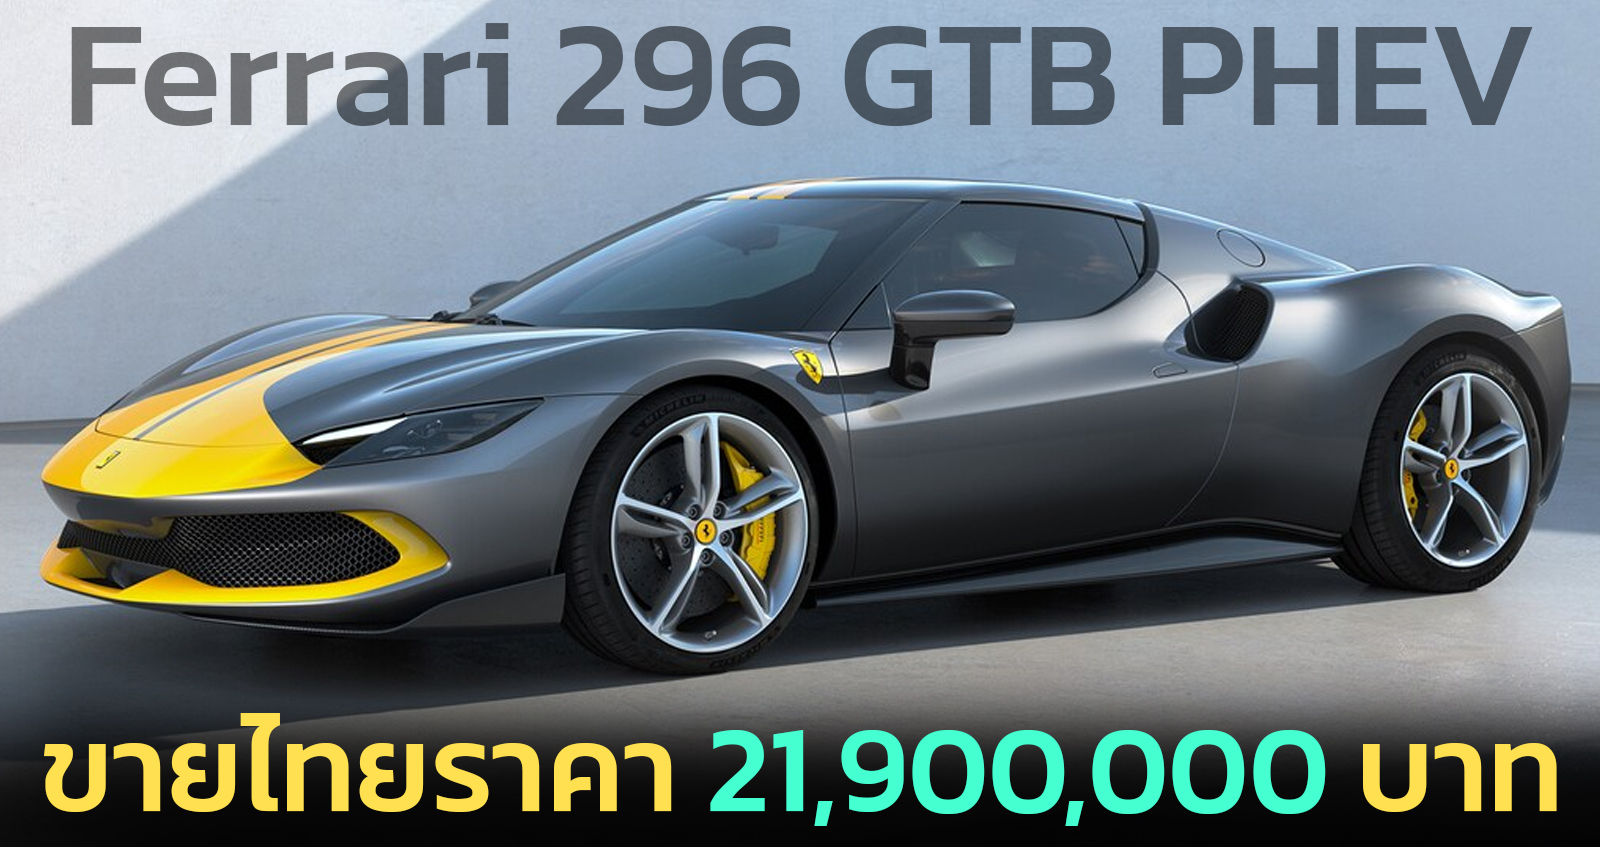 Ferrari 296 GTB PHEV ขายไทยราคา 21,900,000 บาท V6 3.0T 819 แรงม้า